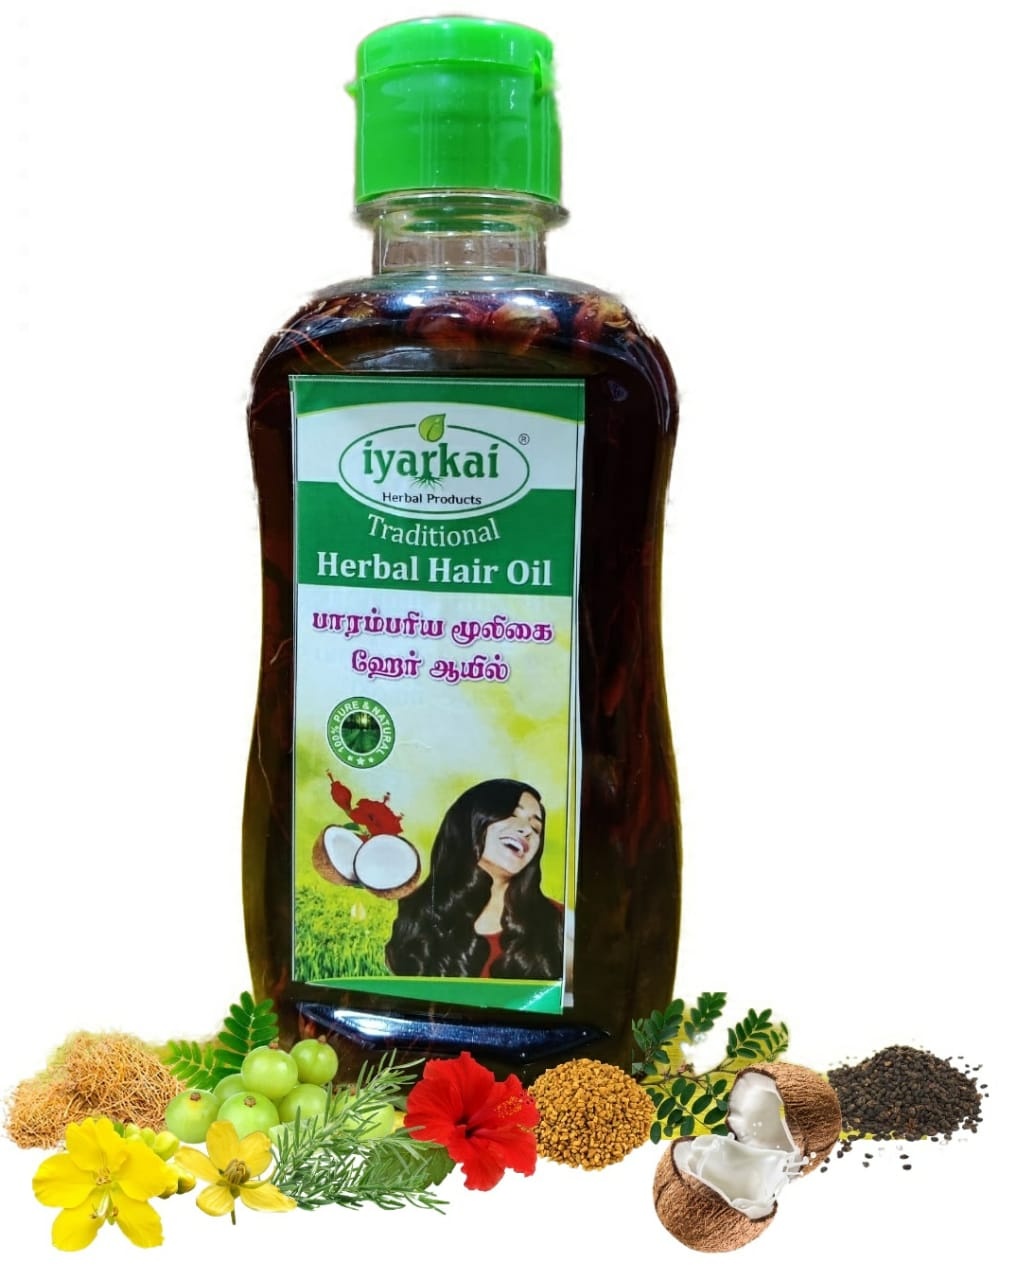 Iyarkai Traditional Herbal Hair Oil 200ml - Iyarkai Herbal Products